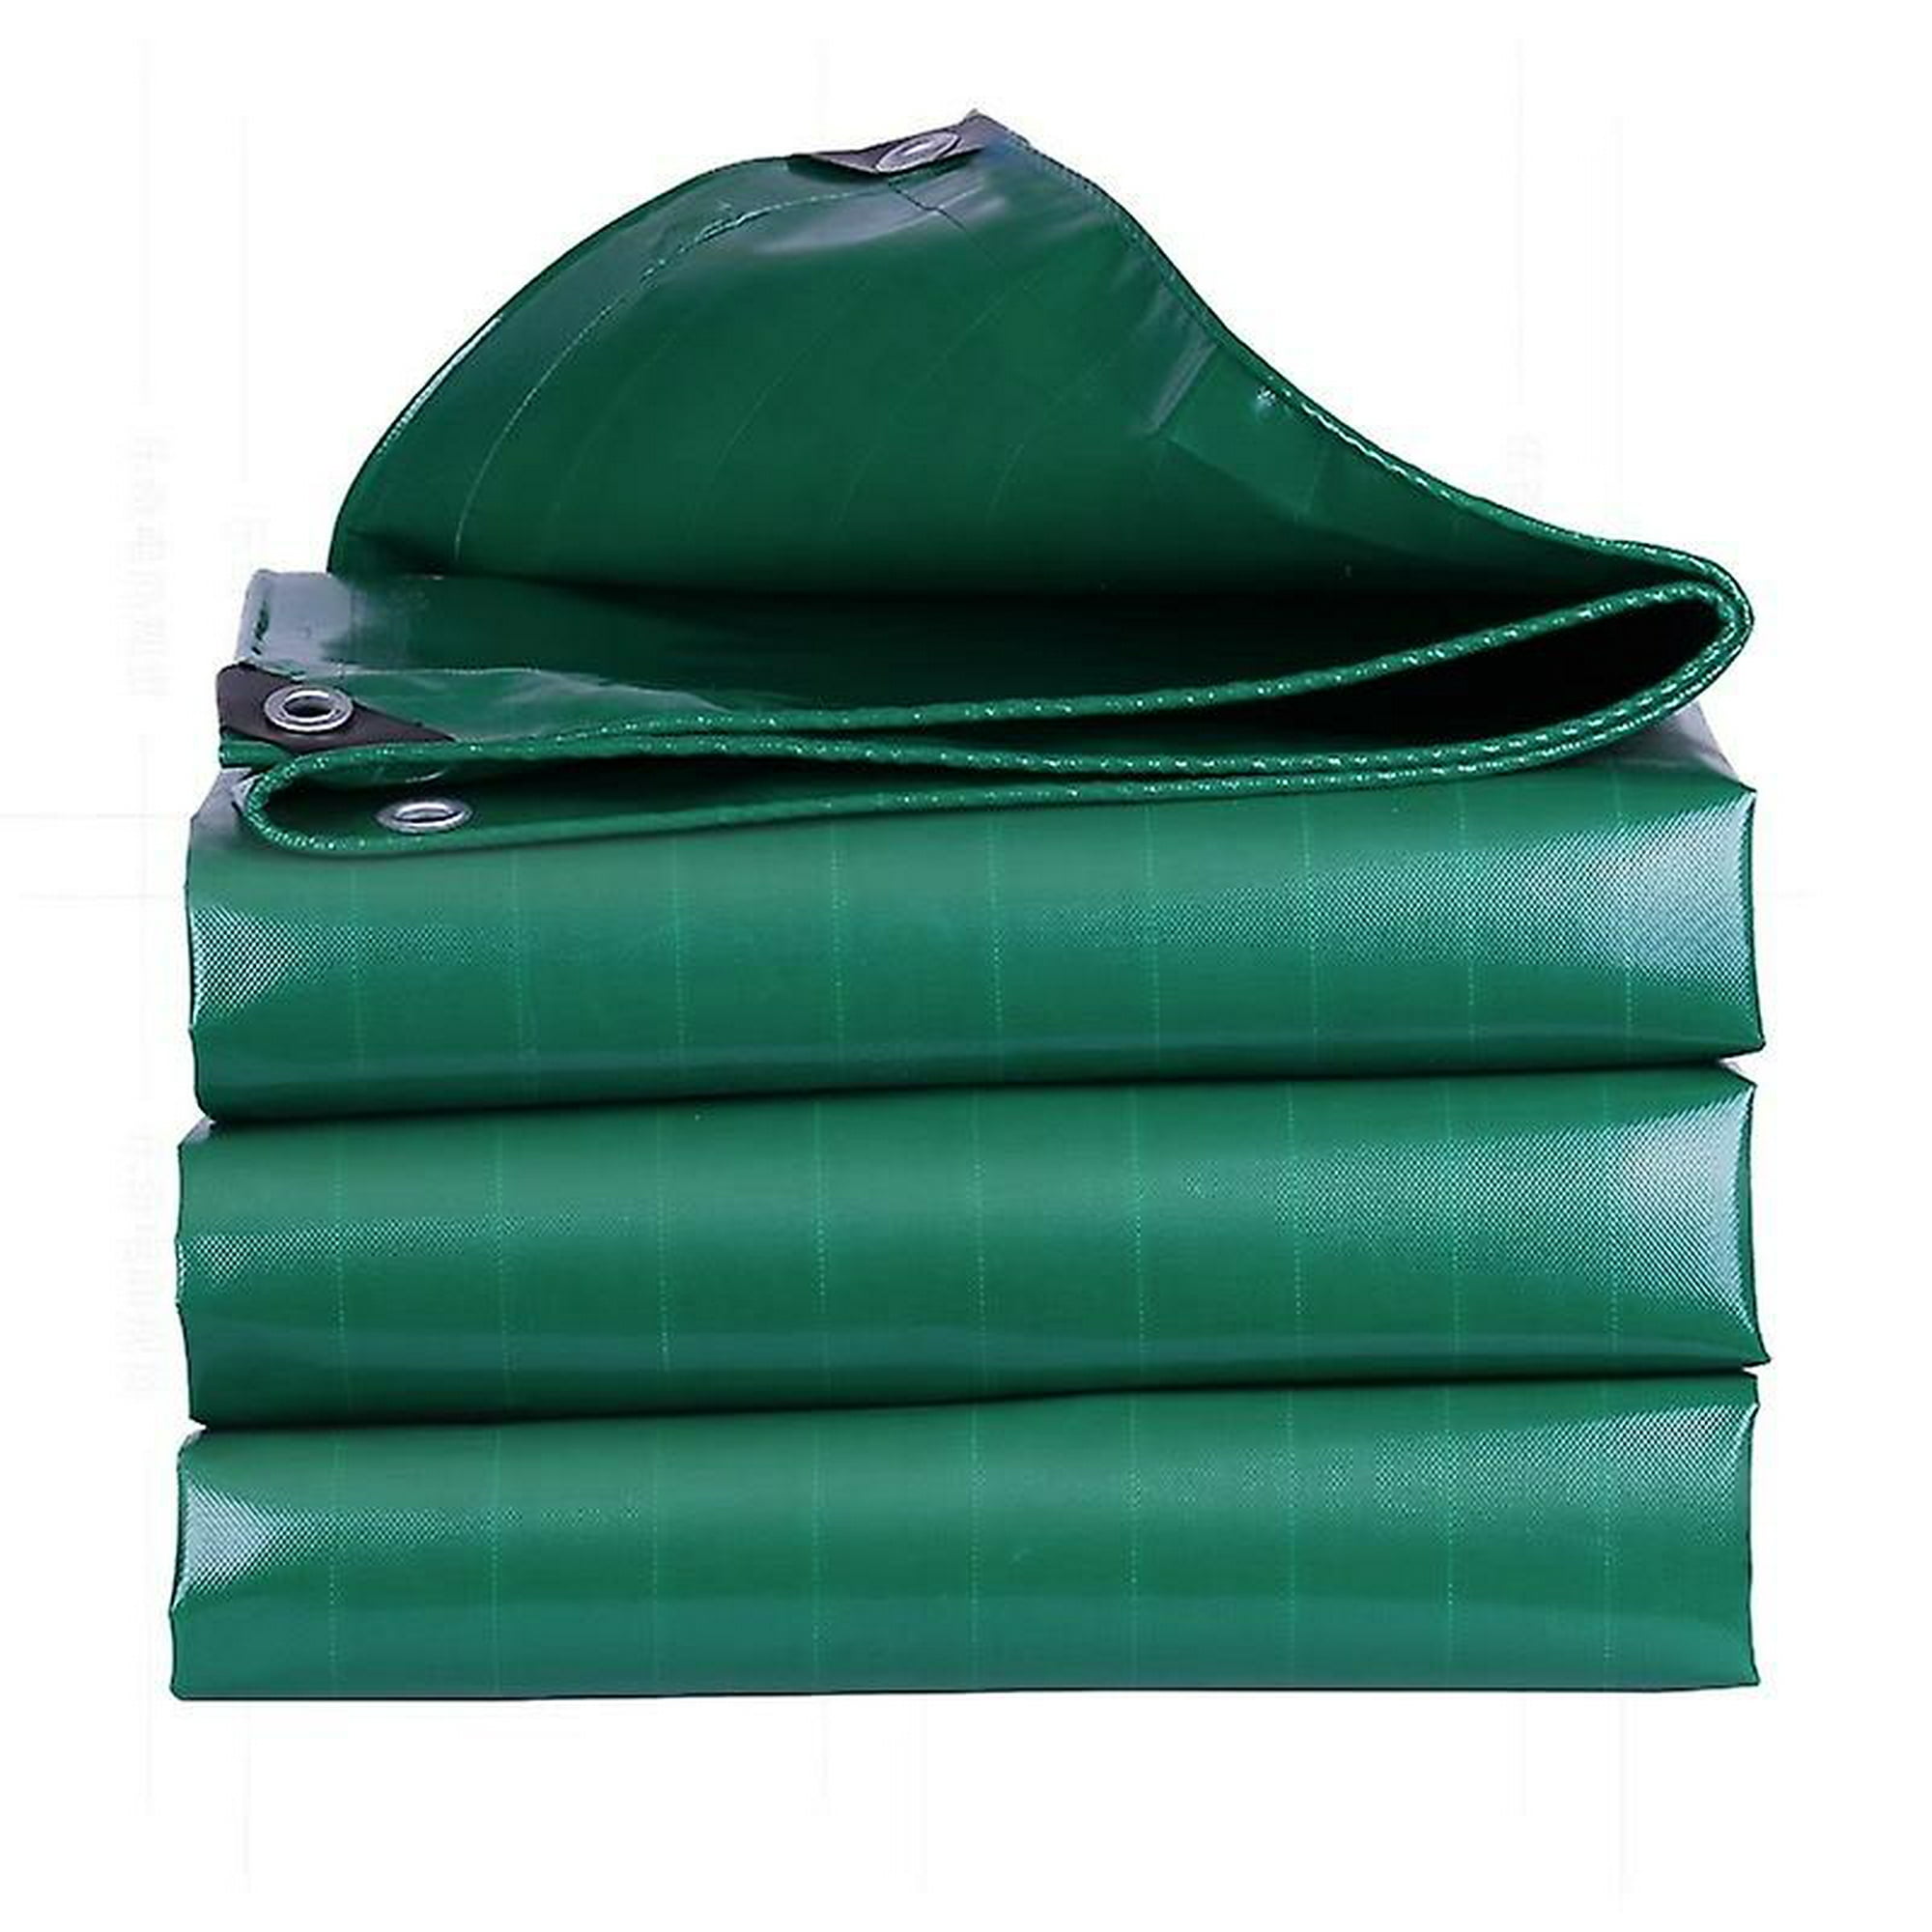  Lona impermeable, lonas, cubierta de lona multiusos, lona de  PVC verde resistente, múltiples tamaños, para acampar al aire libre,  cubierta de muebles de suelo, impermeable (color: verde; tamaño: 9.8 x 13.1  ft) 